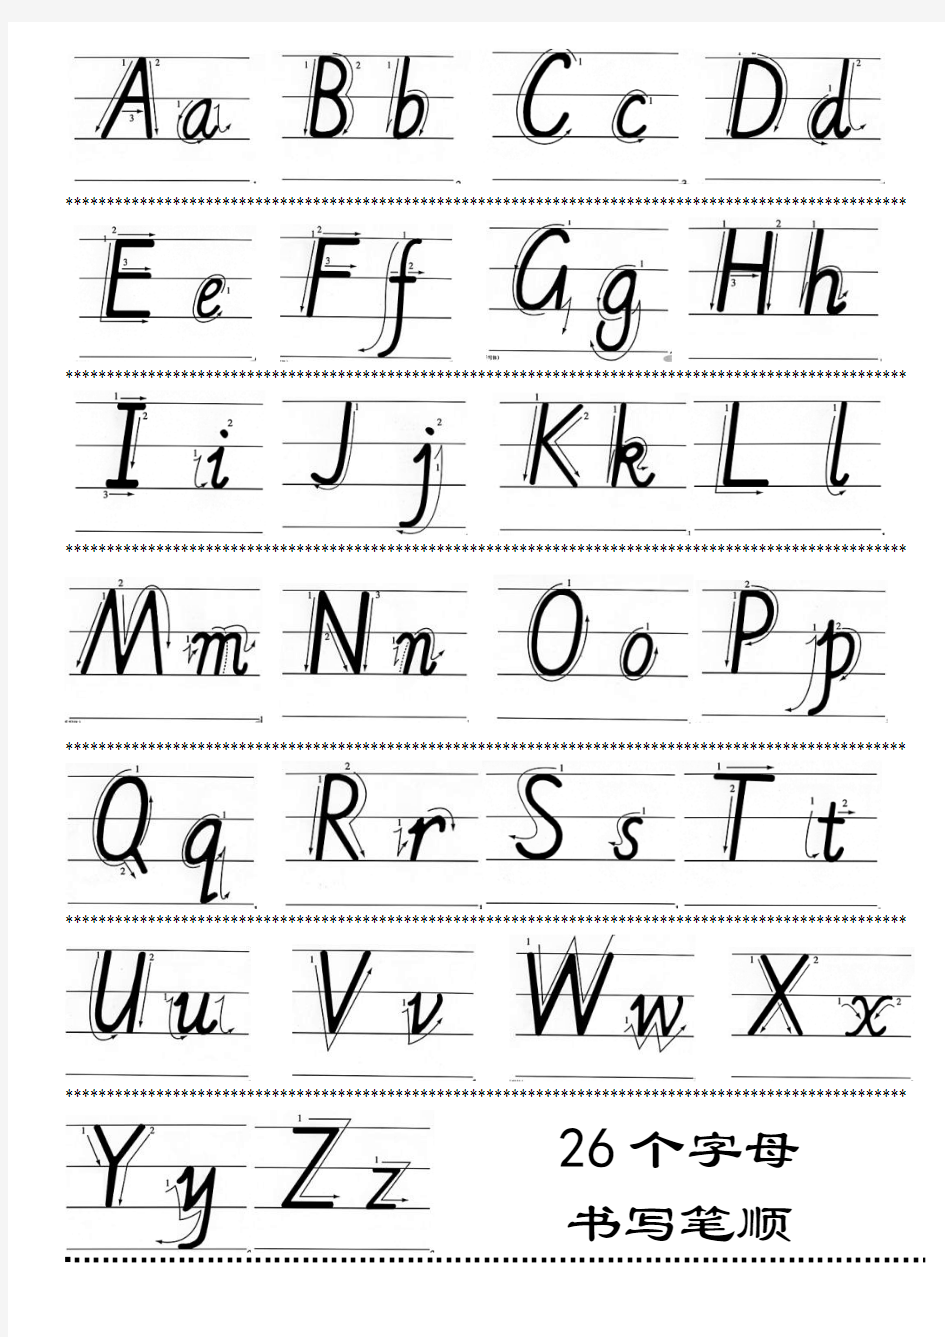 7月26小学汉语拼音声母表韵母表+26个字母书写笔顺 2